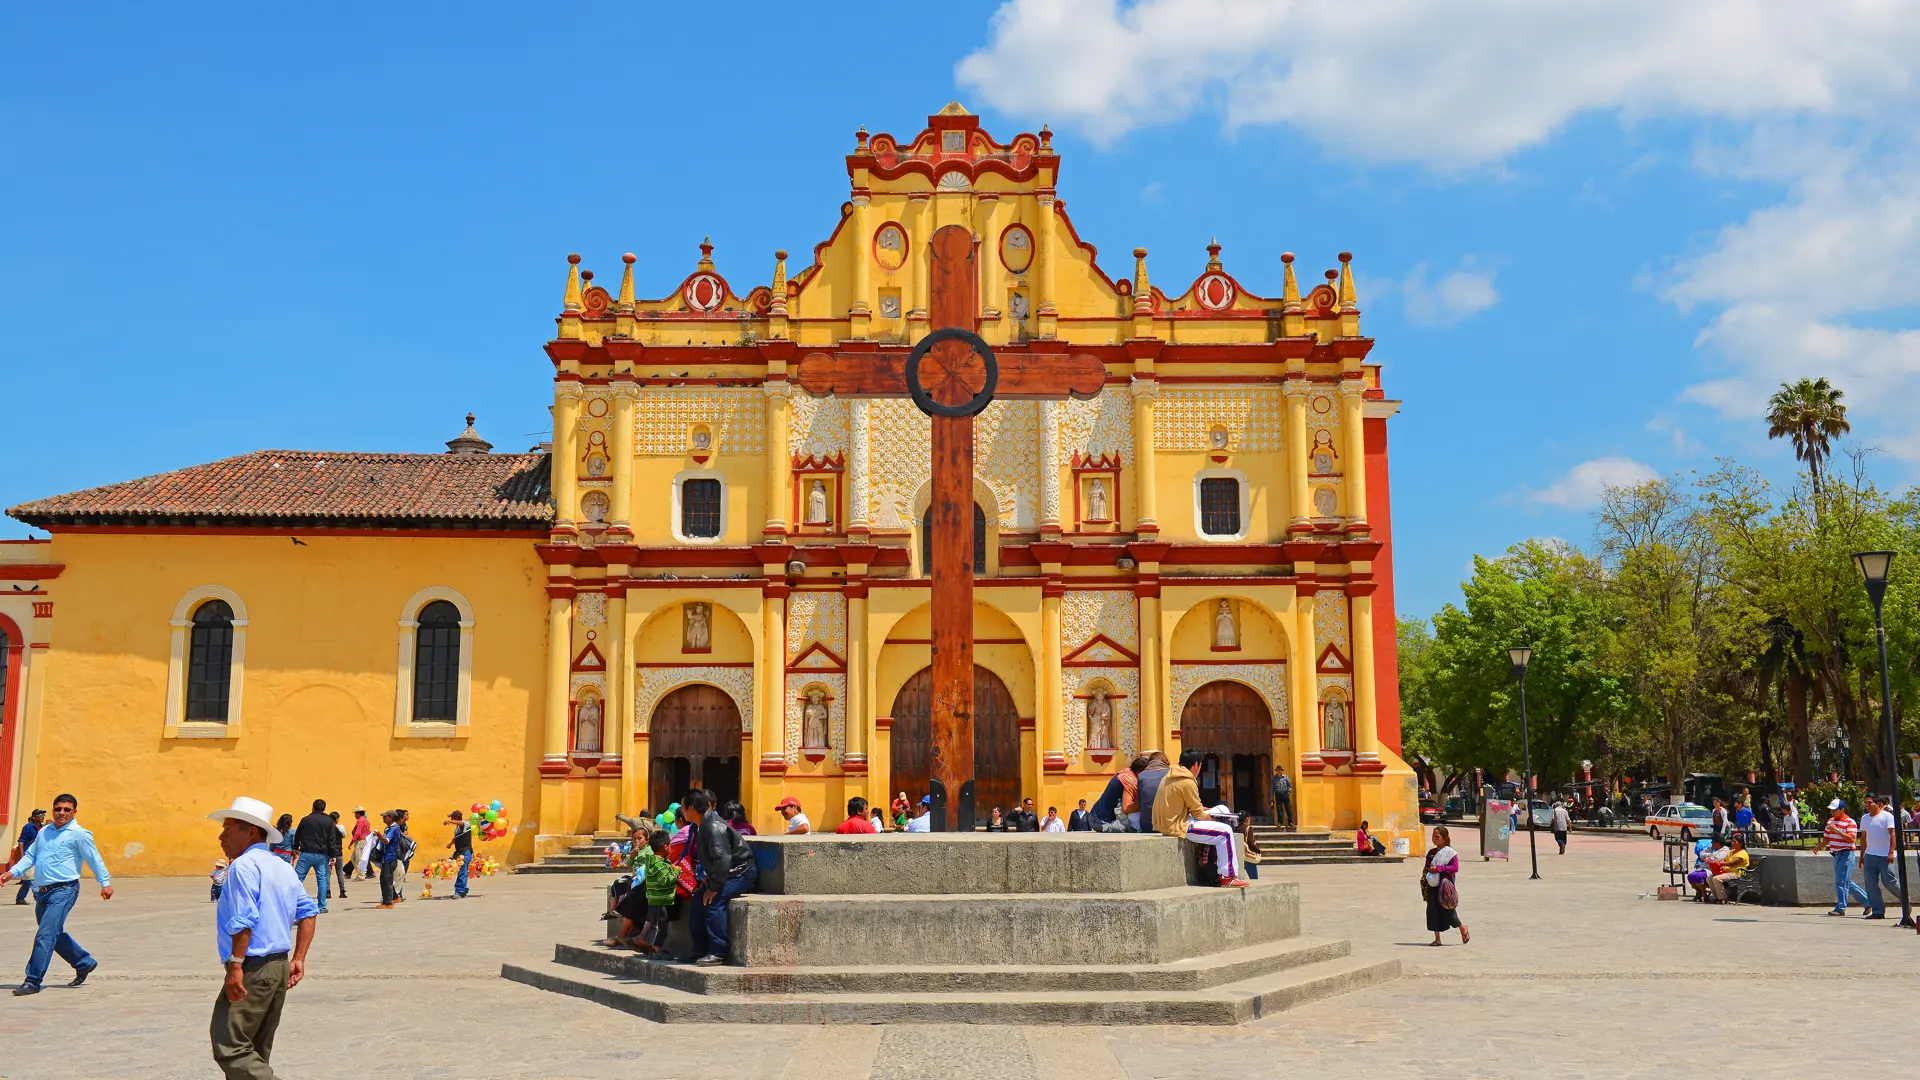 San Cristobal de las Casas - Er en lille perle fra den spanske kolonitid med et virvar af brolagte gader, der kantes af pastelfarvede huse og fører til smukke pladser med markeder og gamle kirker